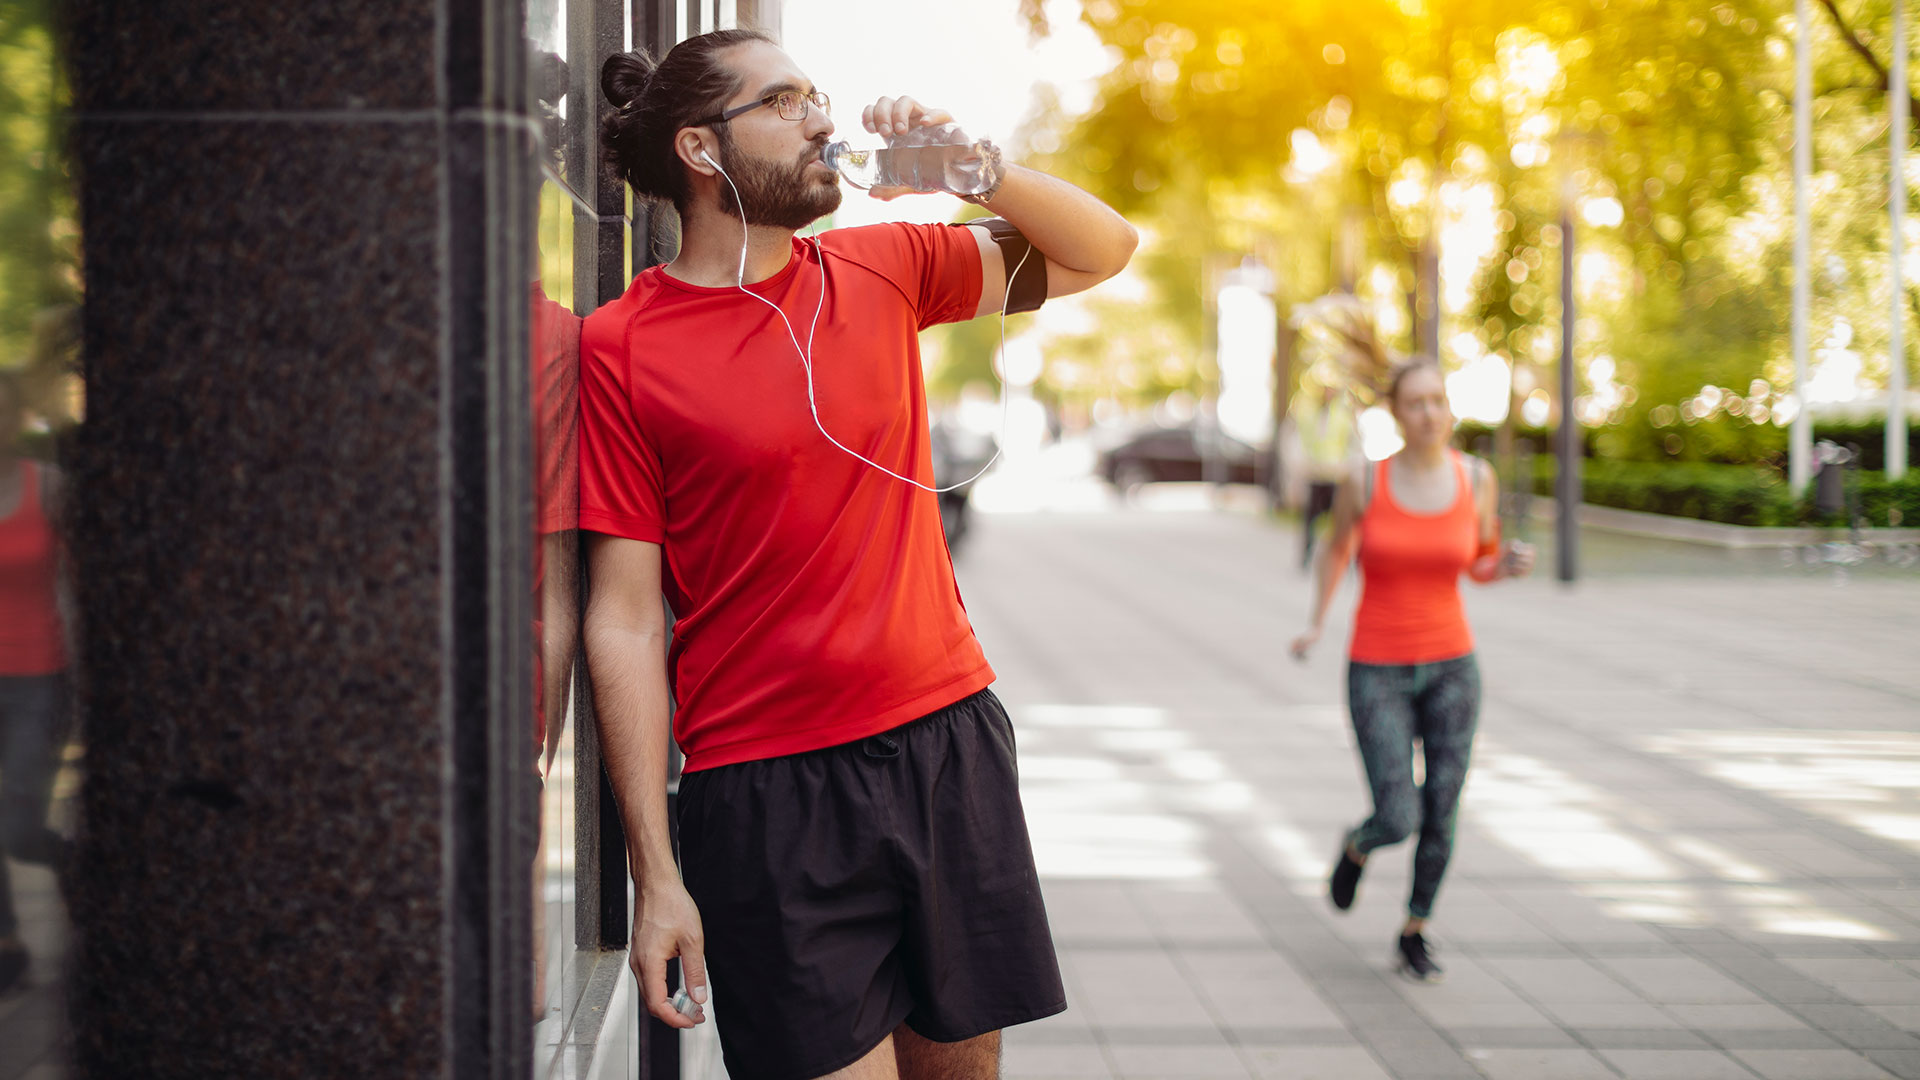 Si se quiere practicar algún deporte, tomar una adecuada cantidad de líquidos antes, durante y después de la actividad física (Getty Images)